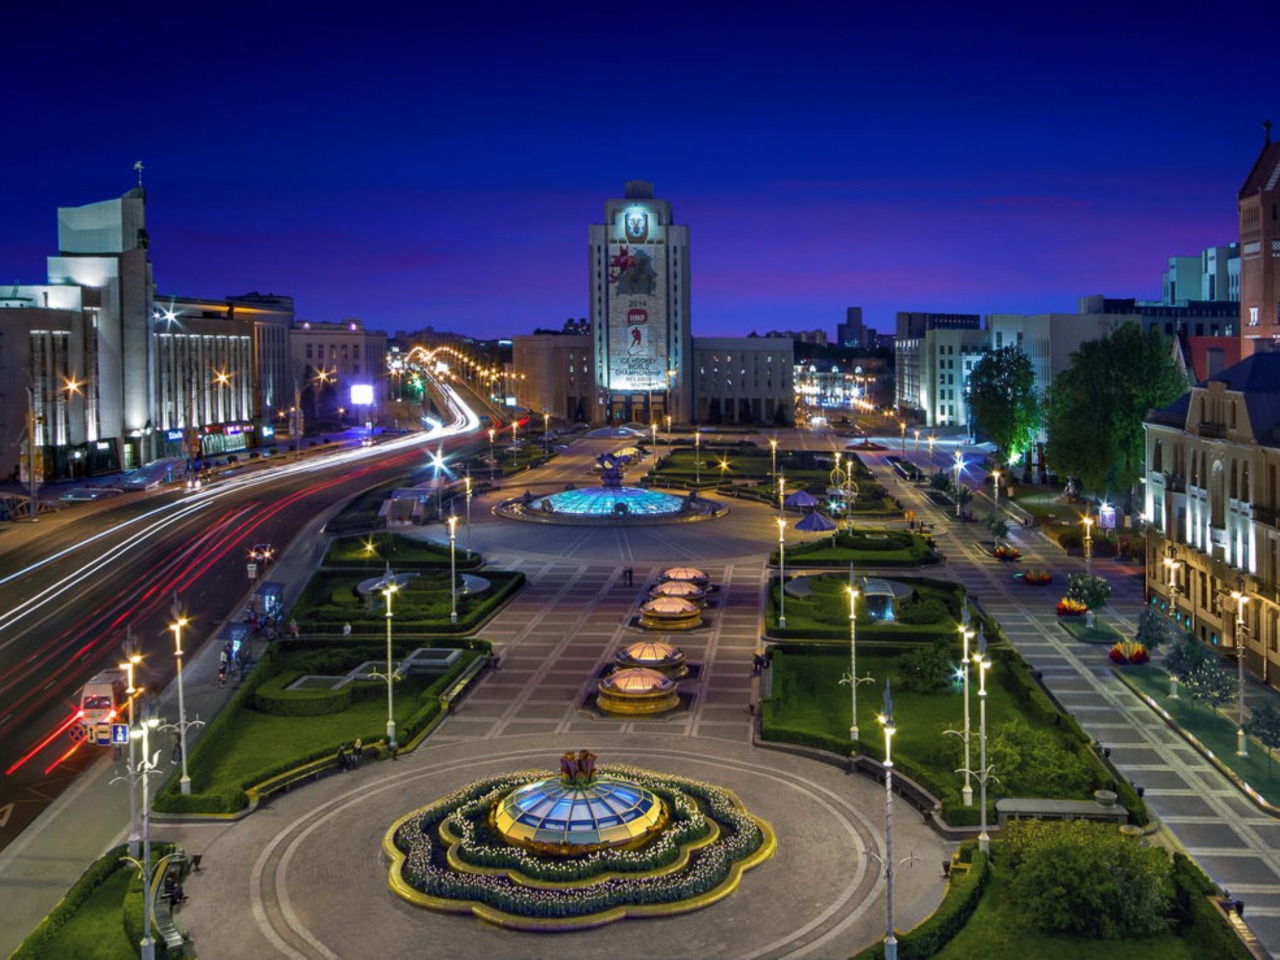 Минск: из глубин веков до современного мегаполиса | Цена 125€, отзывы, описание экскурсии